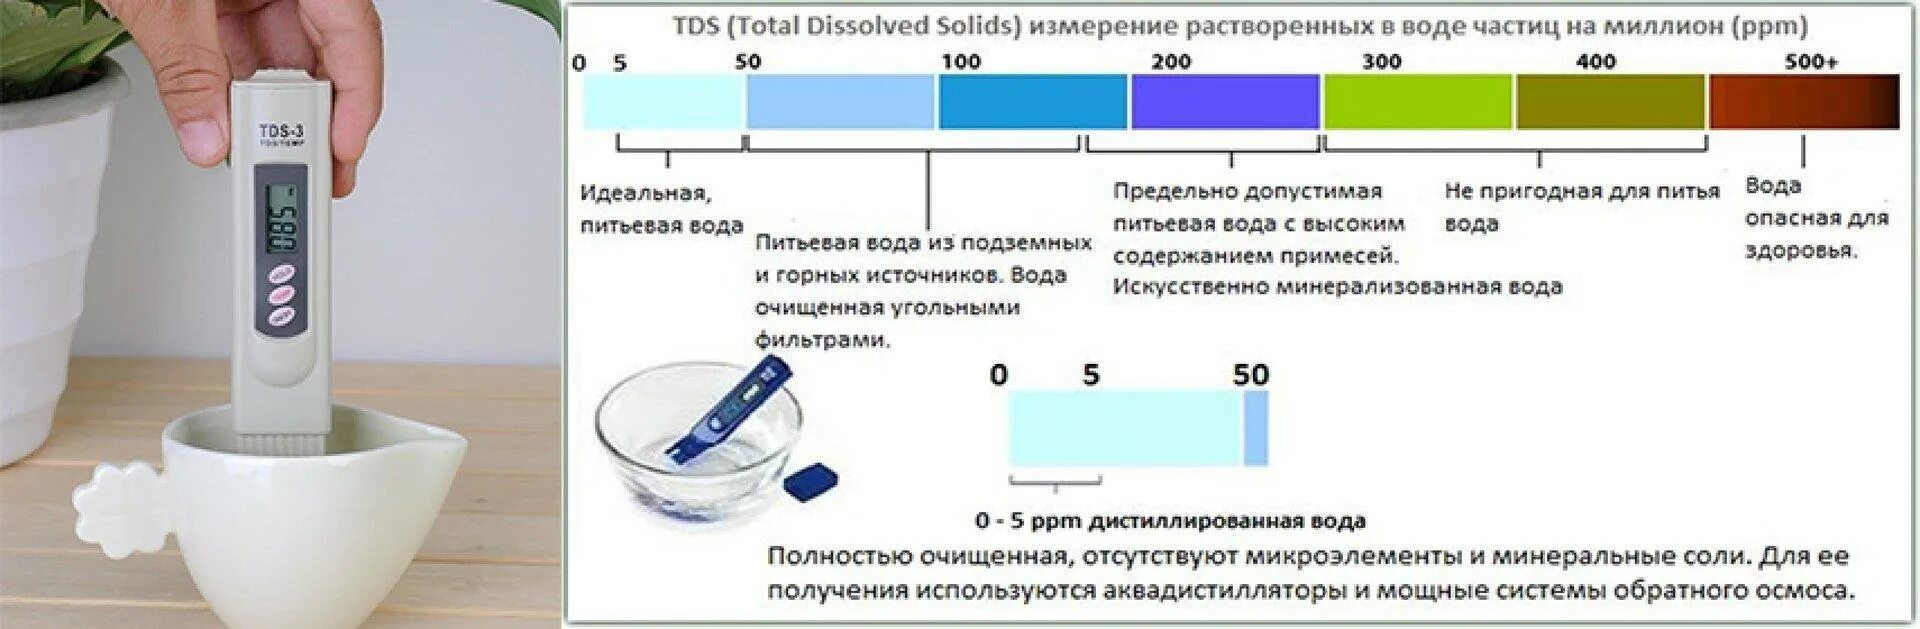 Степень воды. TDS метр для воды таблица 3 ТДС солемер. TDS 3 ТДС метр солемер анализатор качества питьевой воды. TDS 3 ТДС метр солемер анализатор качества питьевой воды таблица. ТДС 3 тестер воды таблица.